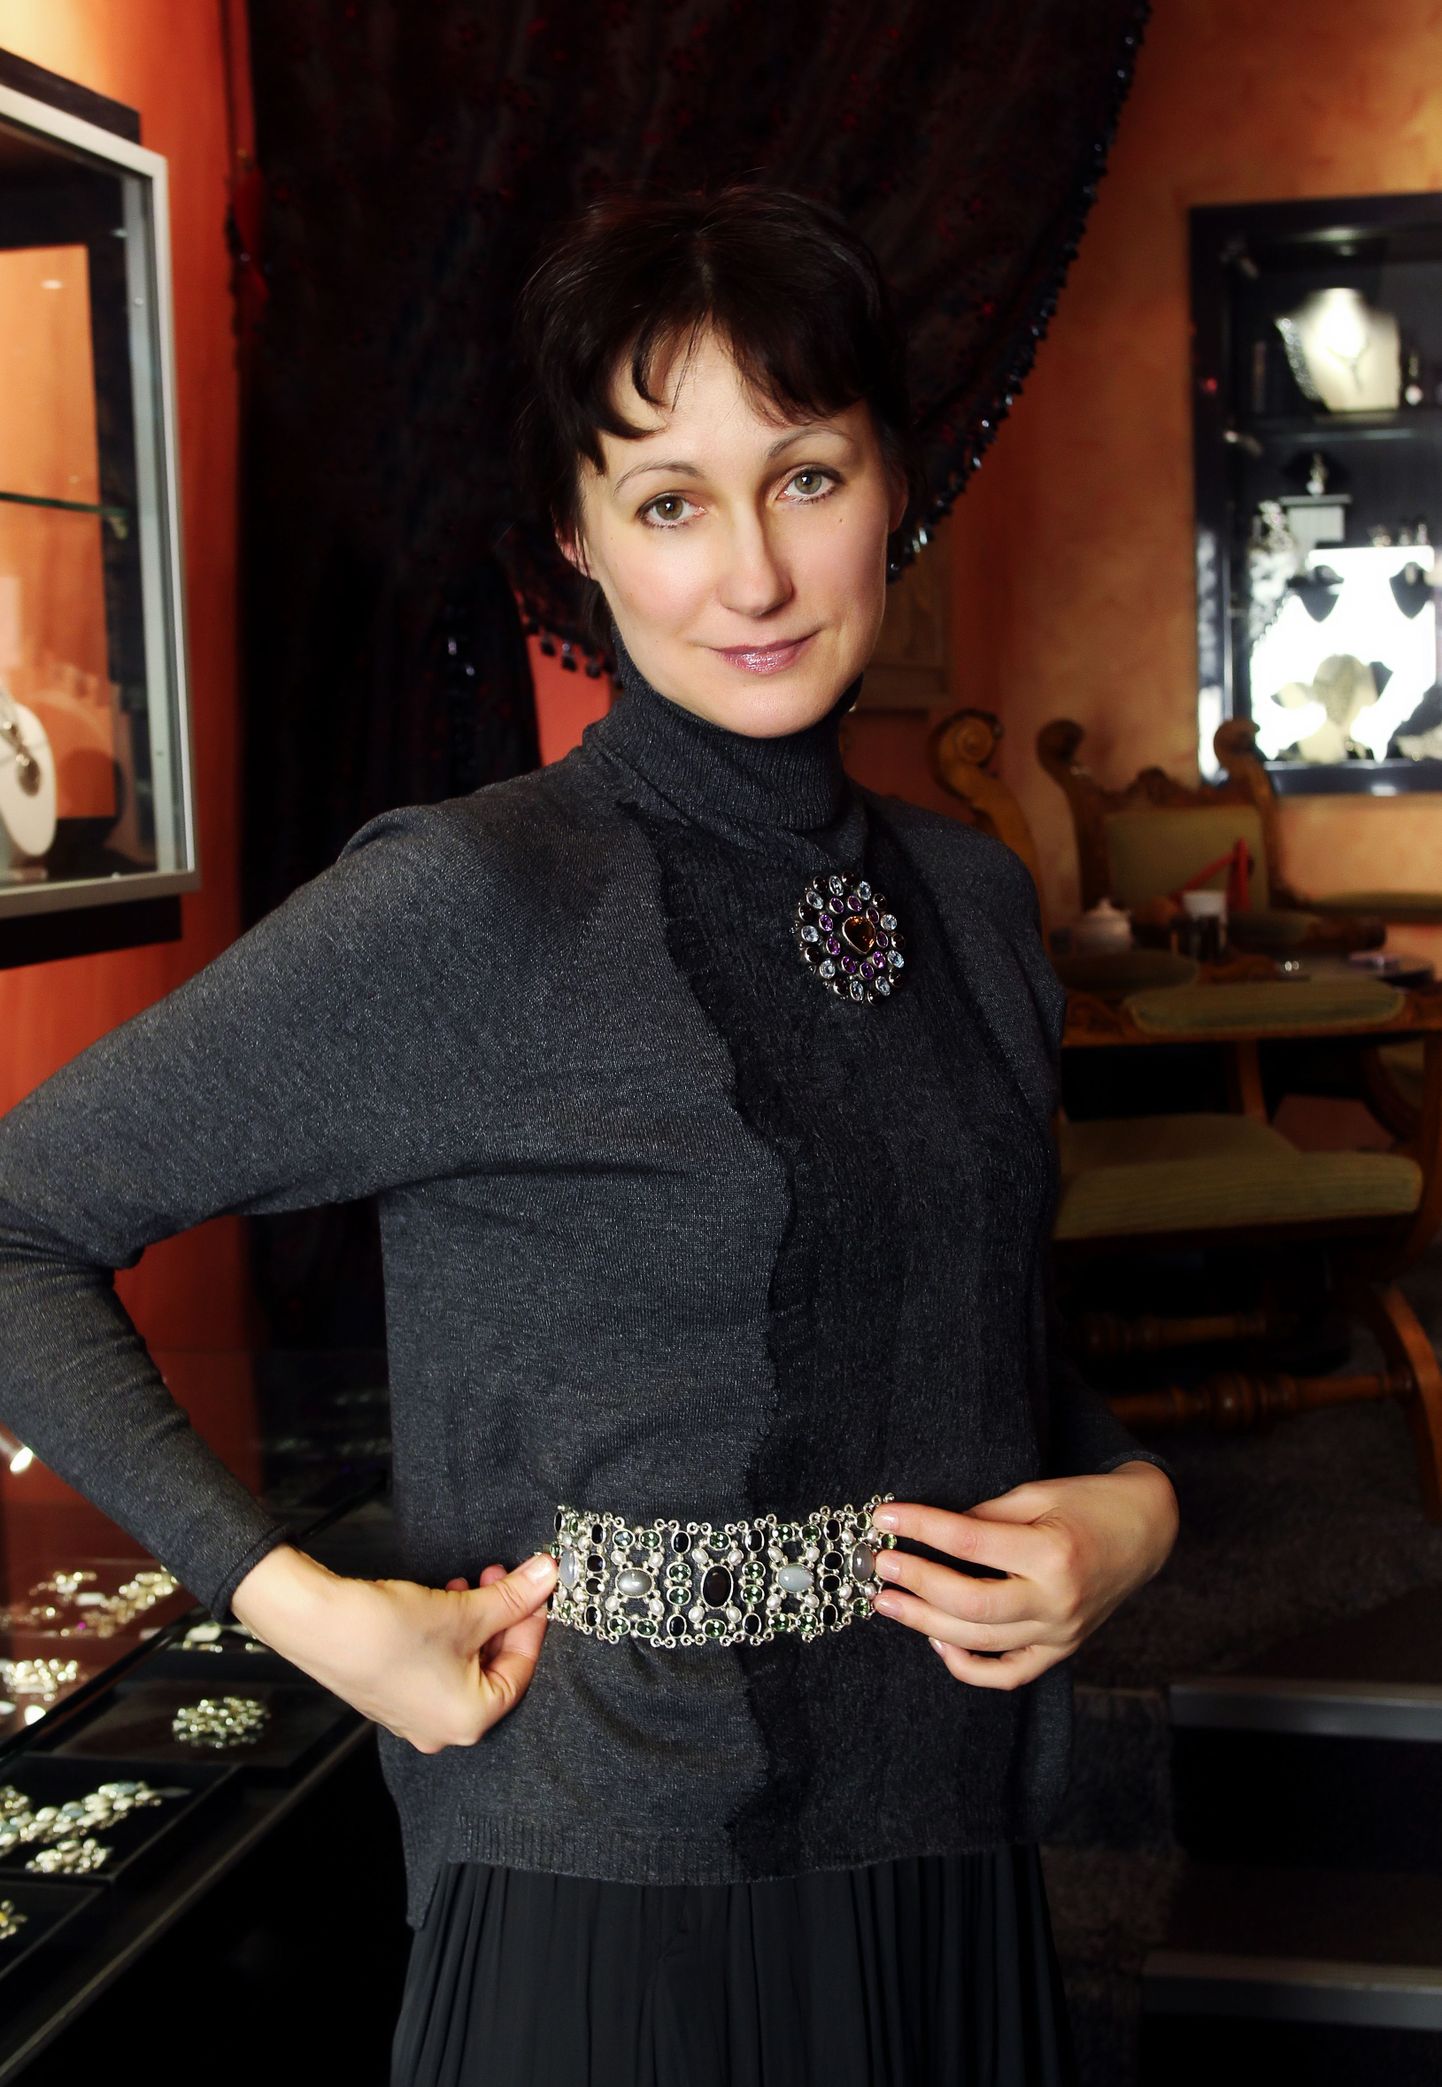 Ювелир Марина Аганина демонстрирует, как отлично широкий браслет может смотреться в качестве детали пояса.